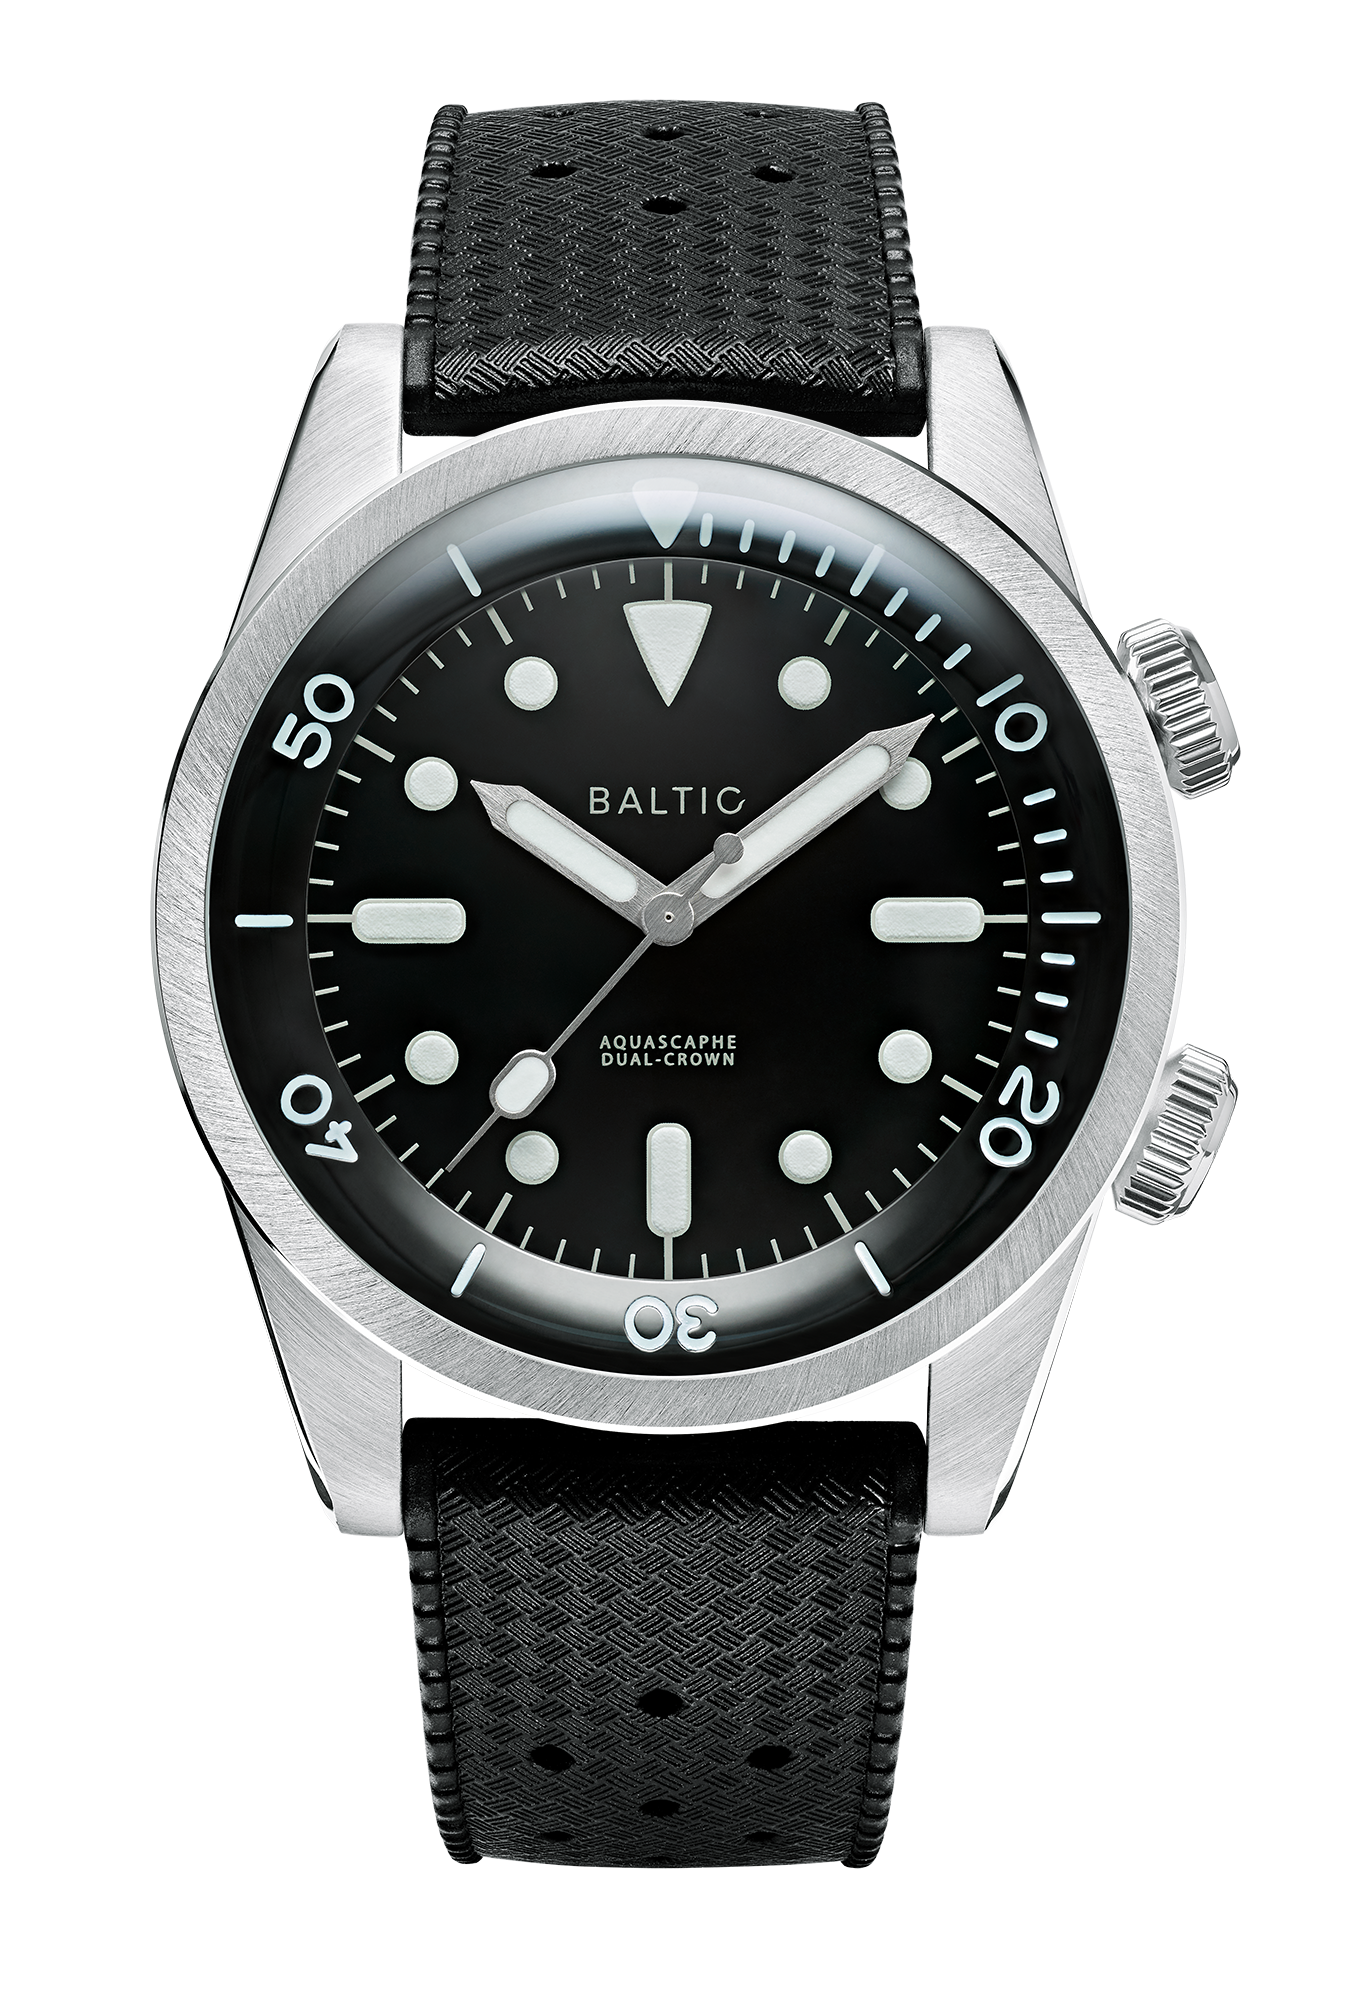 Aquascaphe Dual-Crown Blue - Baltic Watches